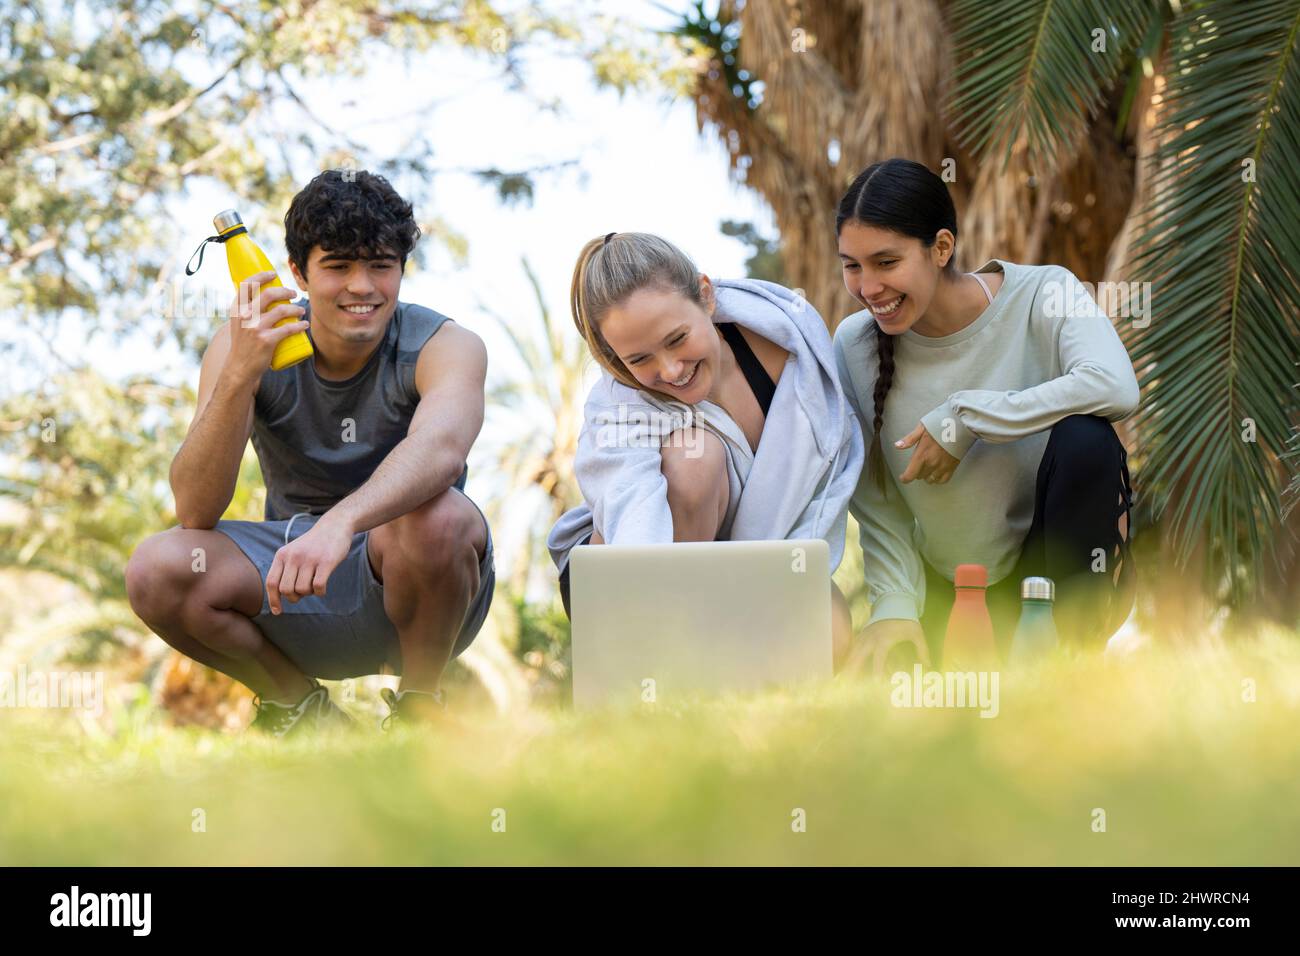 Drei junge Sportbegeisterte schauen sich den Laptop an und lachen im Park Stockfoto